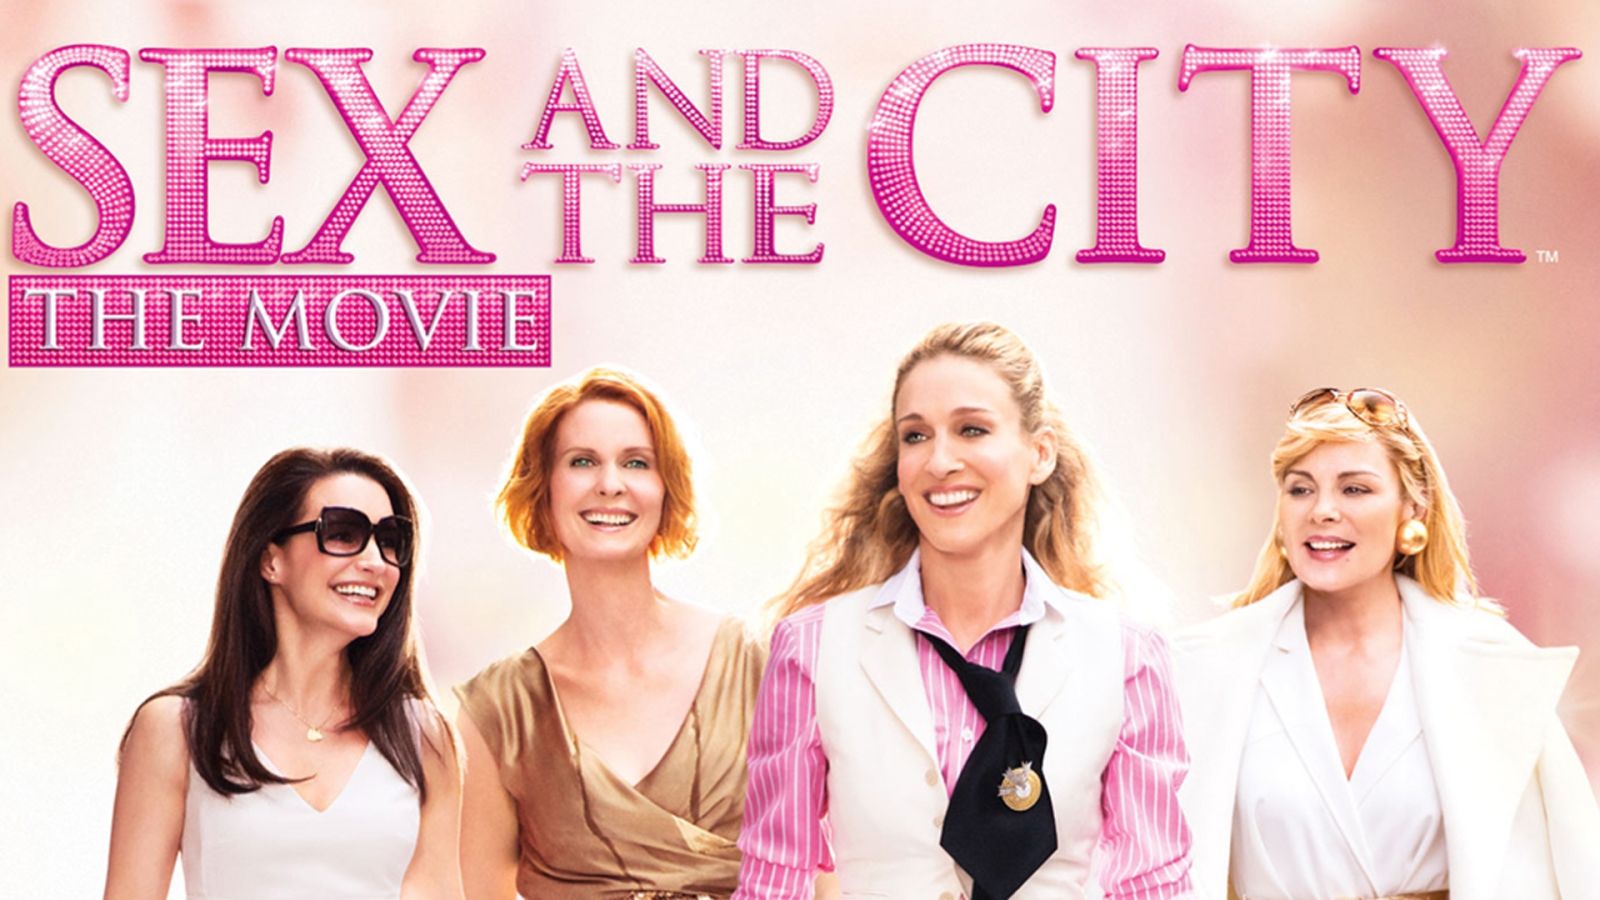 Chuyện ấy là chuyện nhỏ: Bản điện ảnh - Sex and the City: The Movie